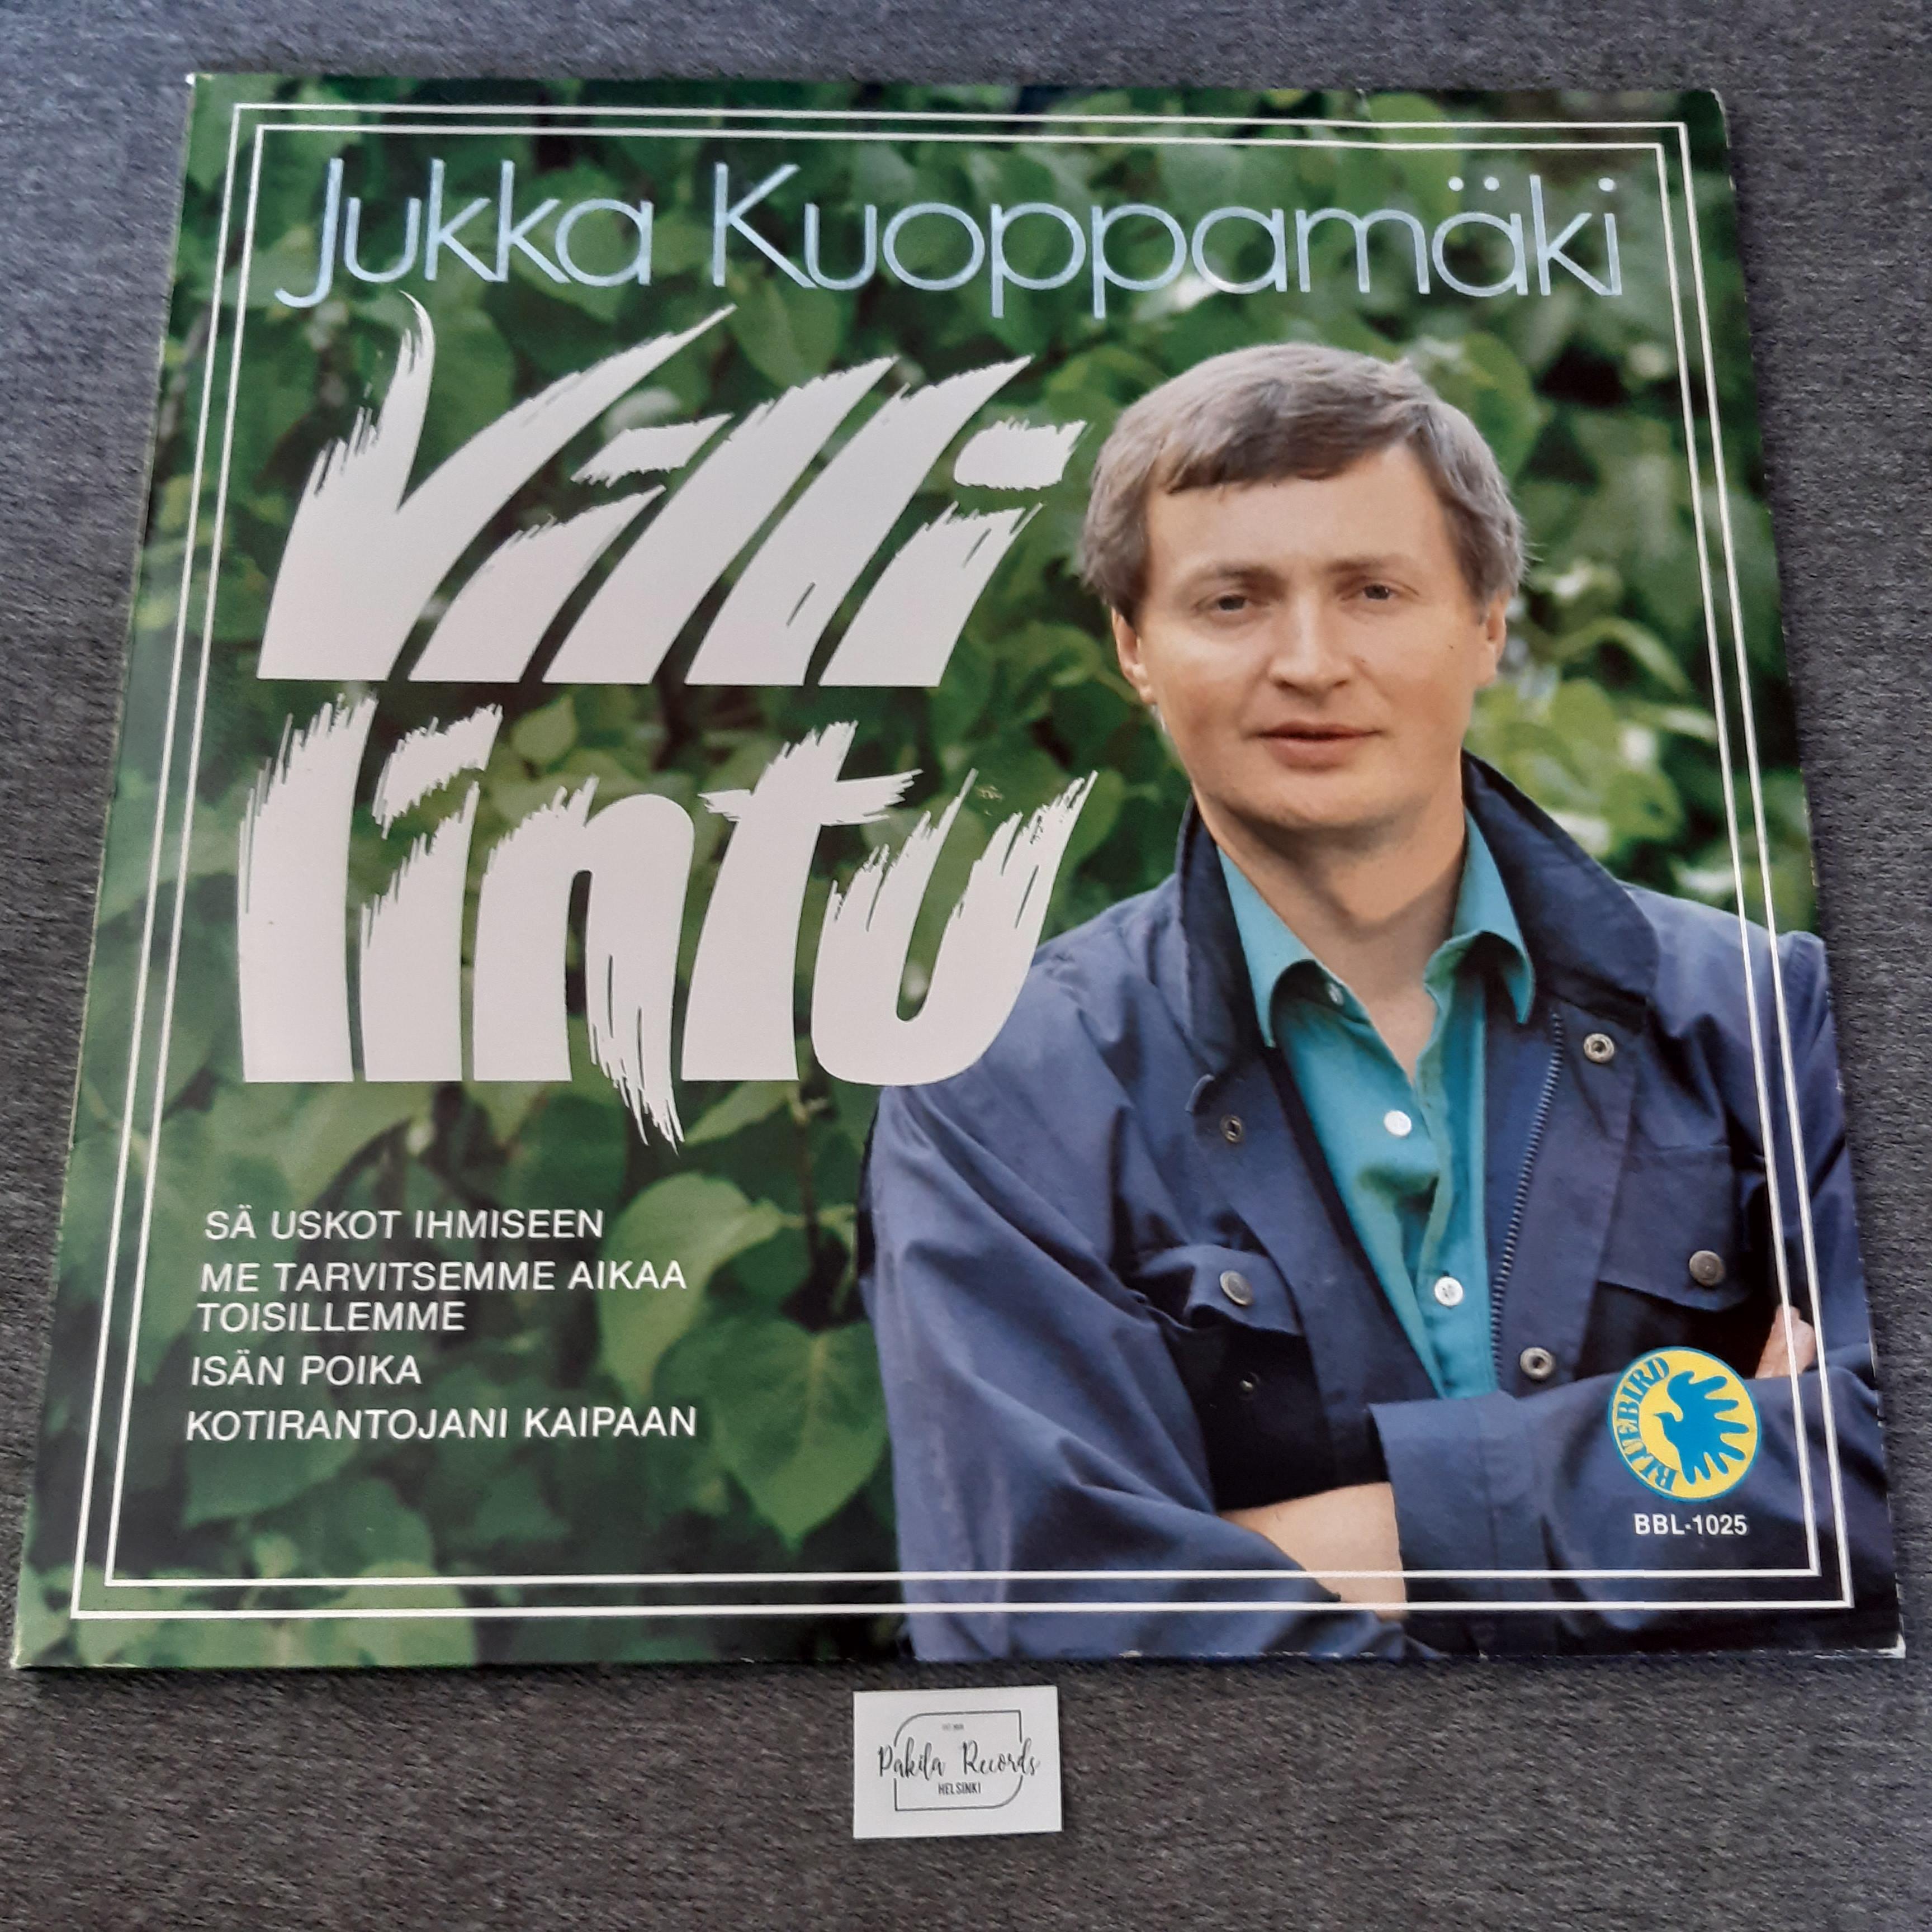 Jukka Kuoppamäki - Villi lintu - LP (käytetty)